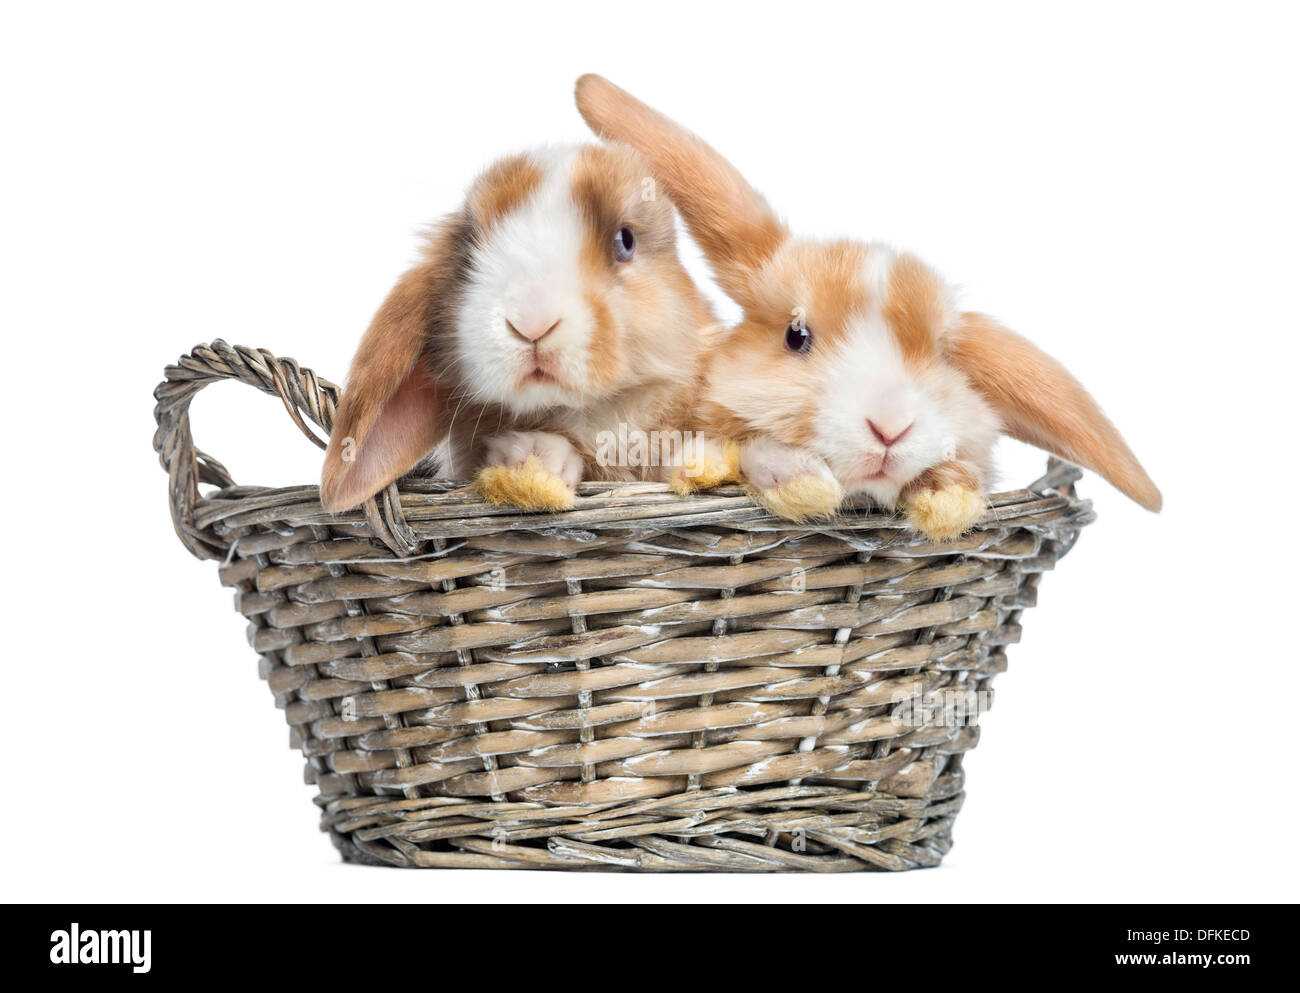 Mini Satin deux lapins Lop dans un panier en osier contre fond blanc Banque D'Images